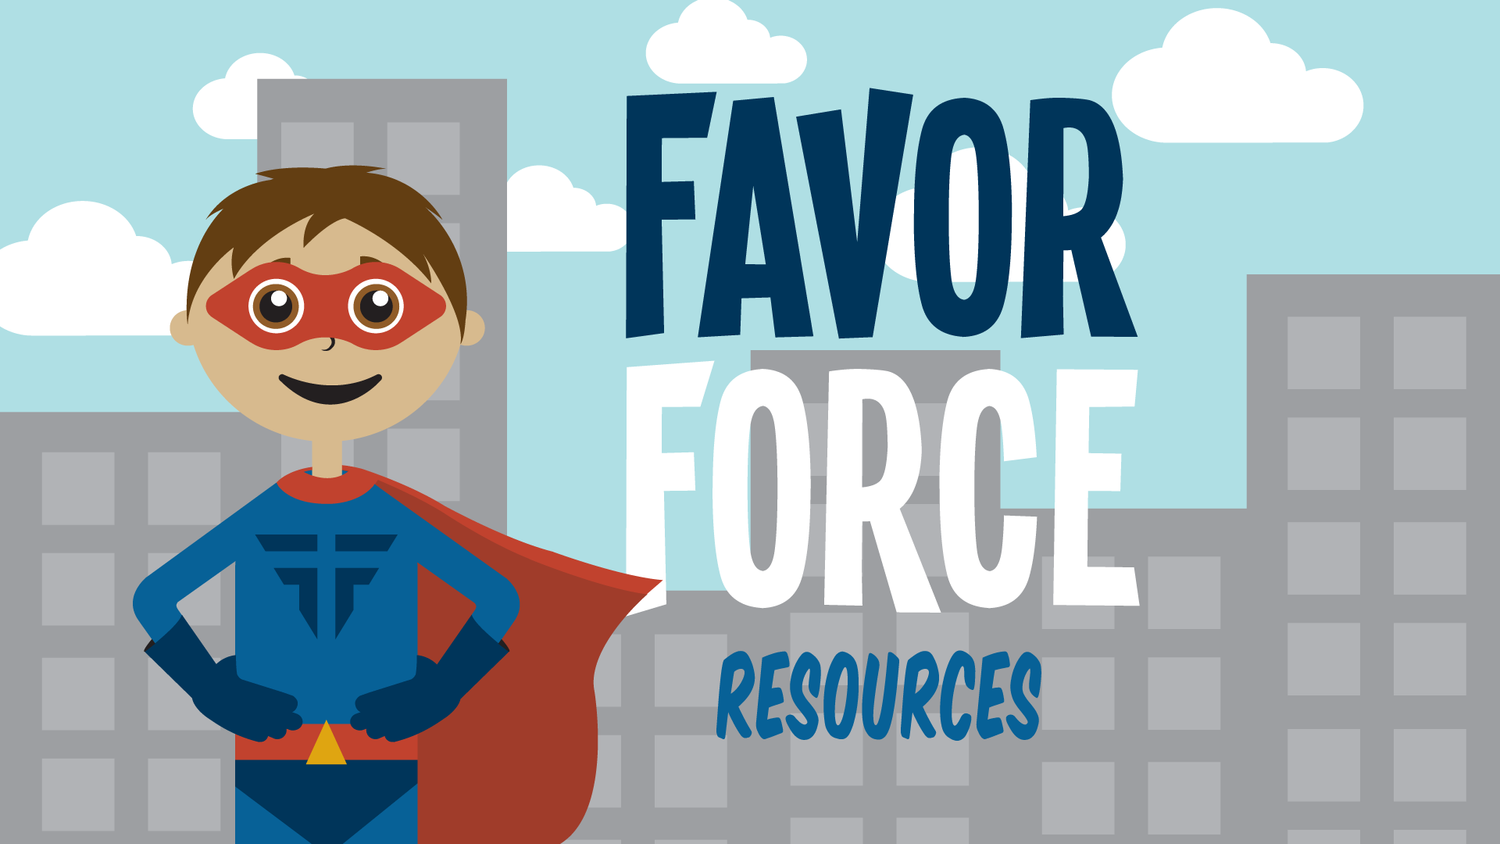 Favor_Force_Resources-v1